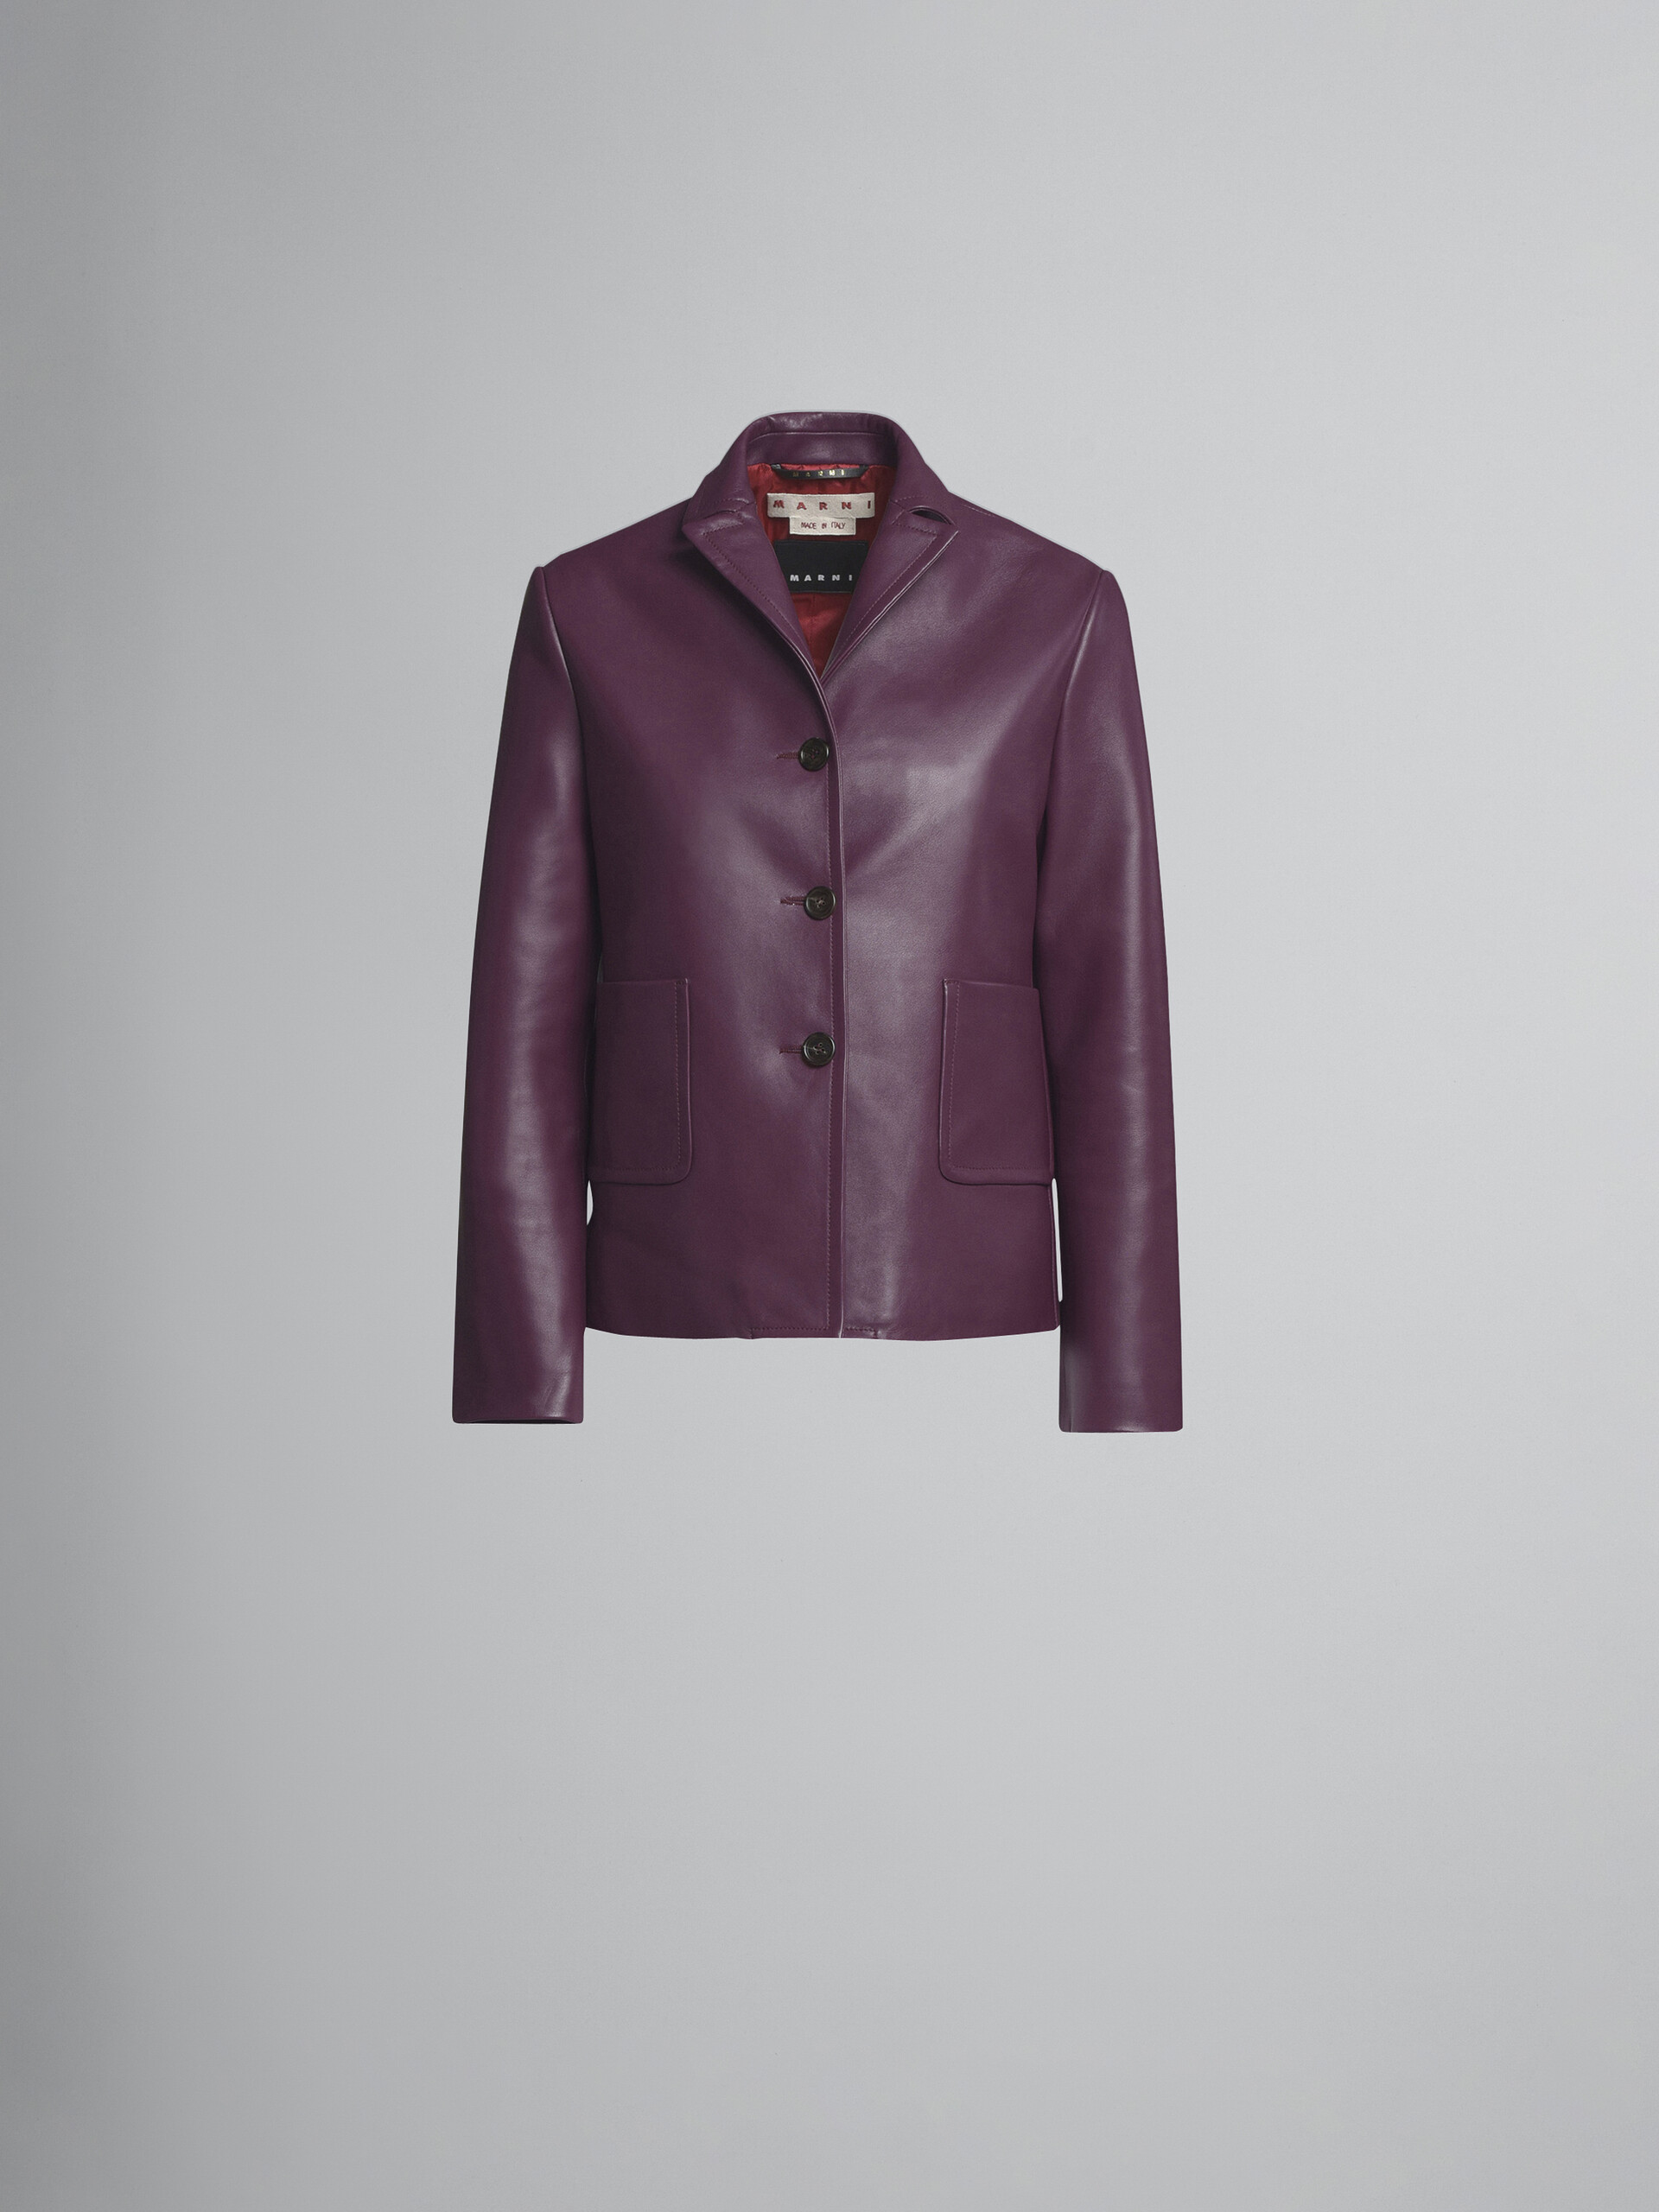 Leather jacket - Jackets - Image 1